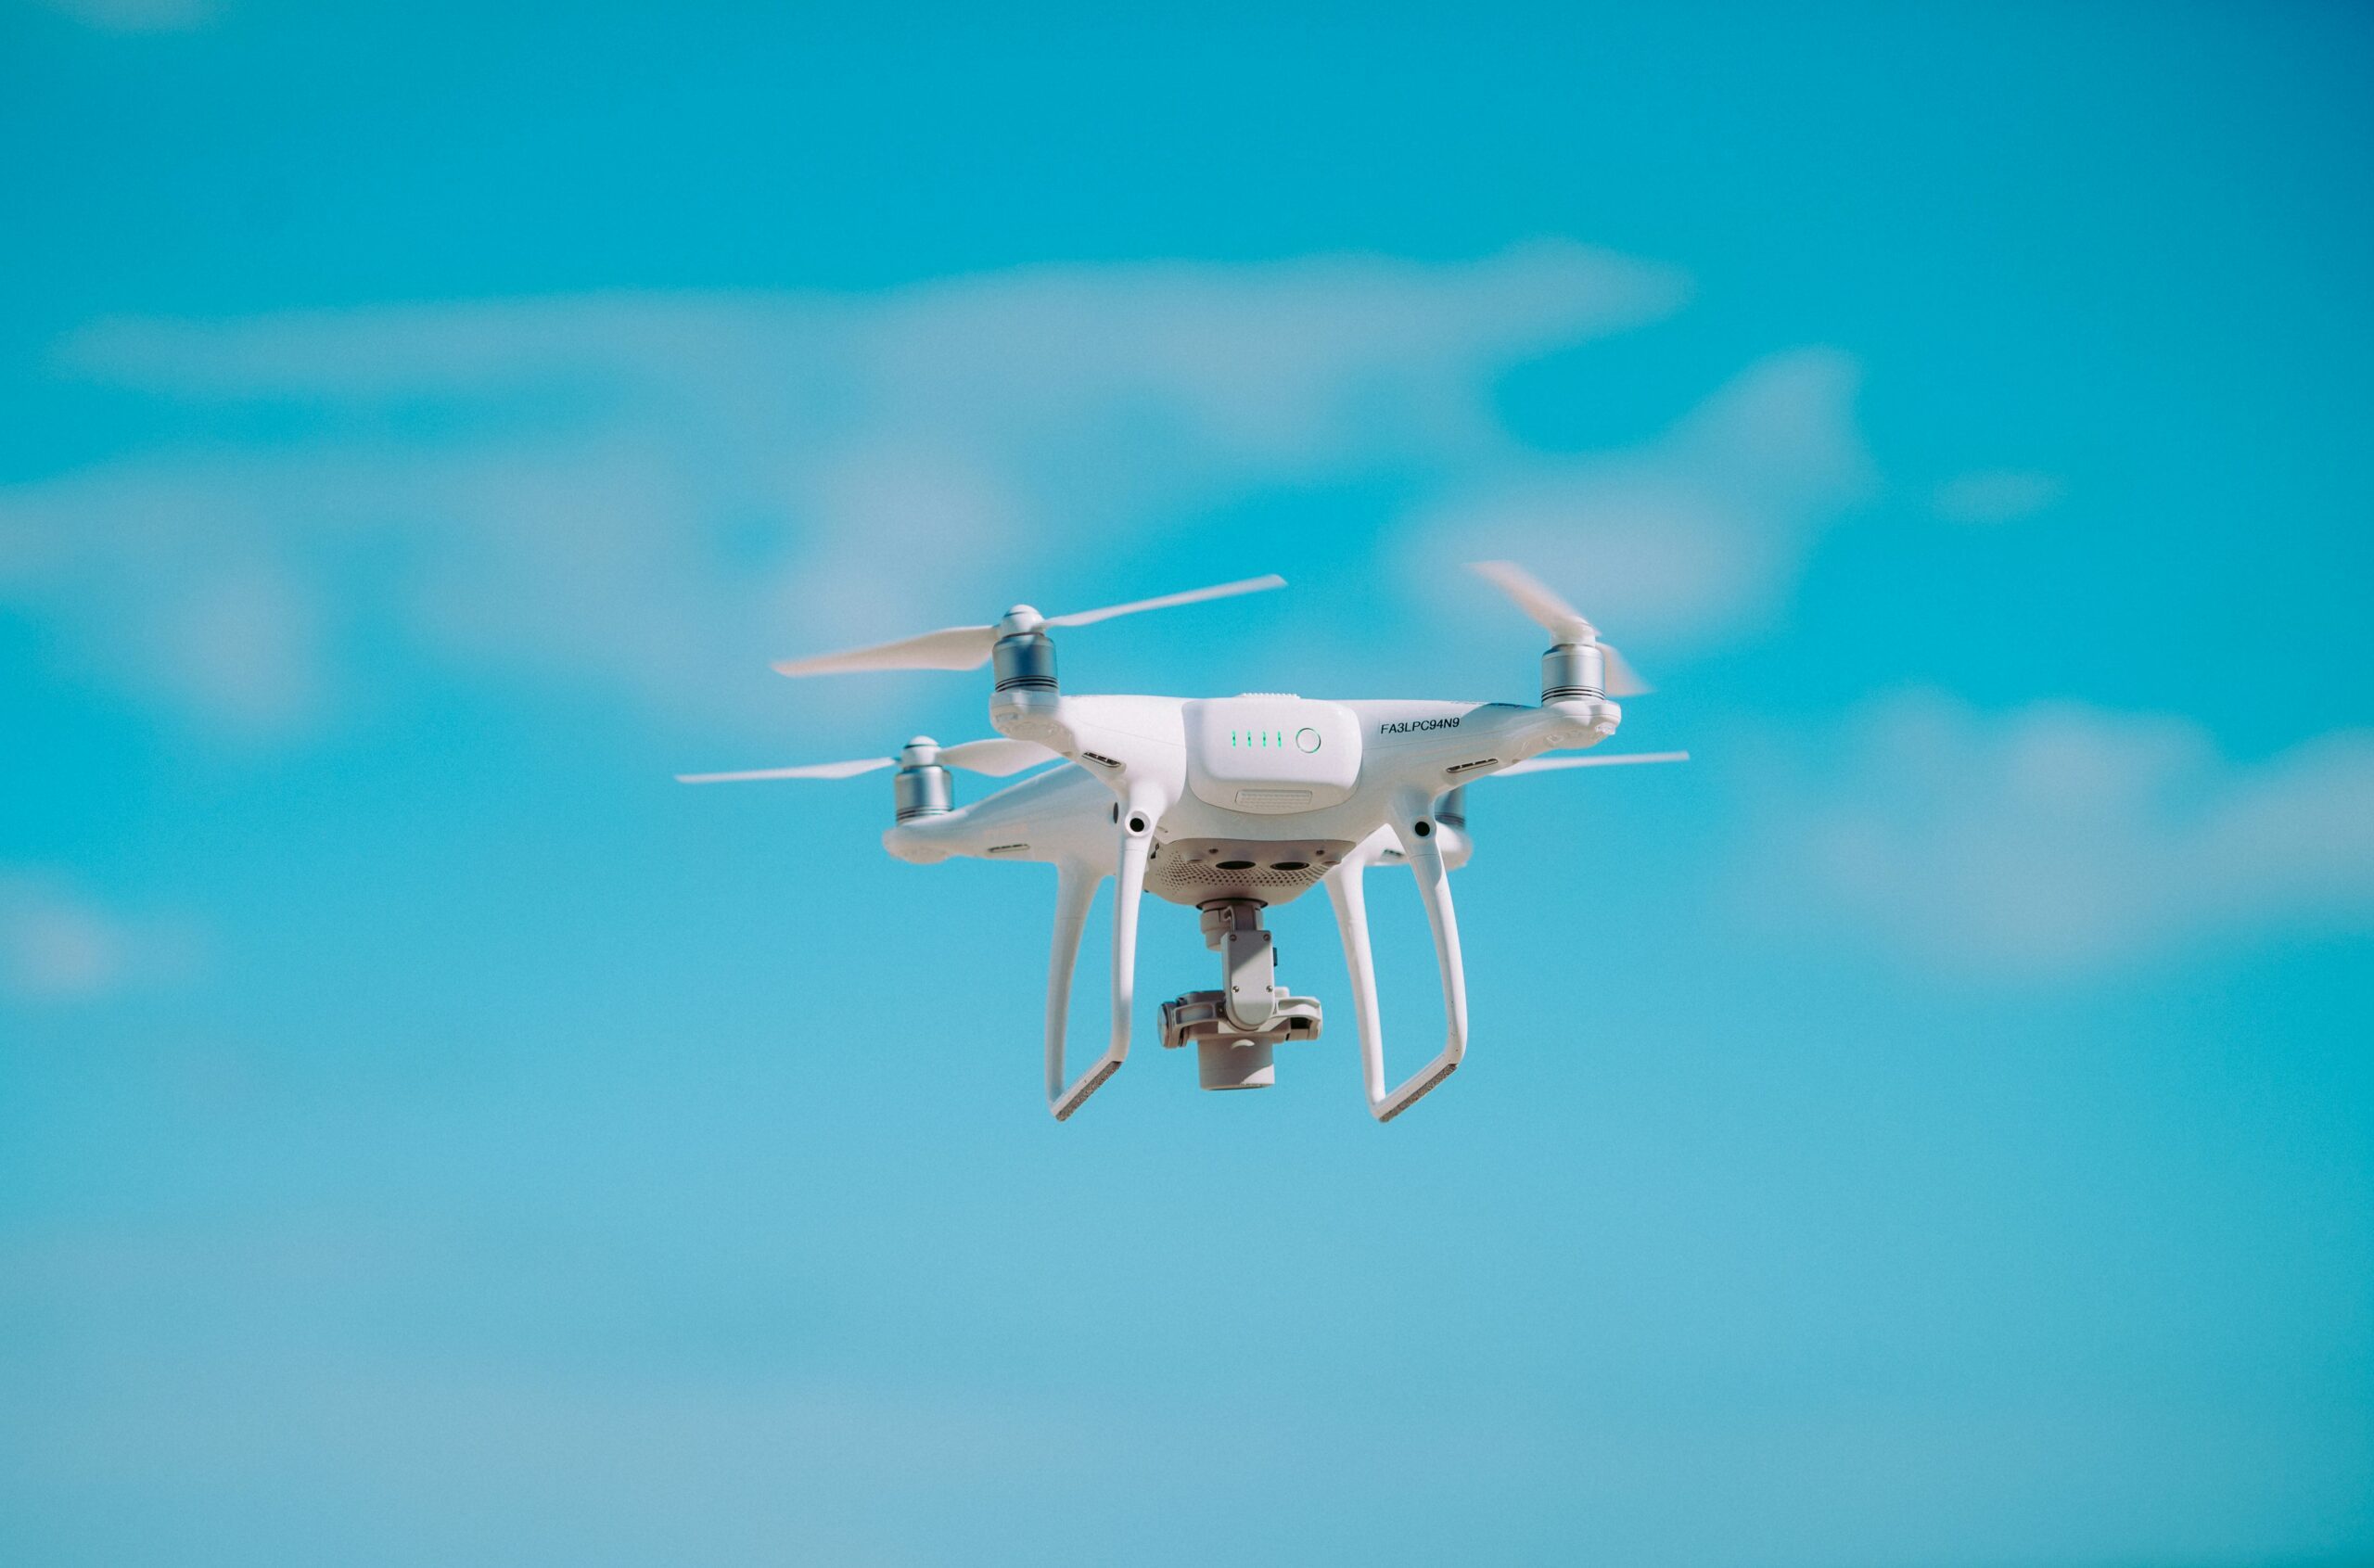 découvrez notre gamme de solutions de lutte anti-drone pour protéger votre espace contre les menaces aériennes. contactez-nous pour des conseils personnalisés.